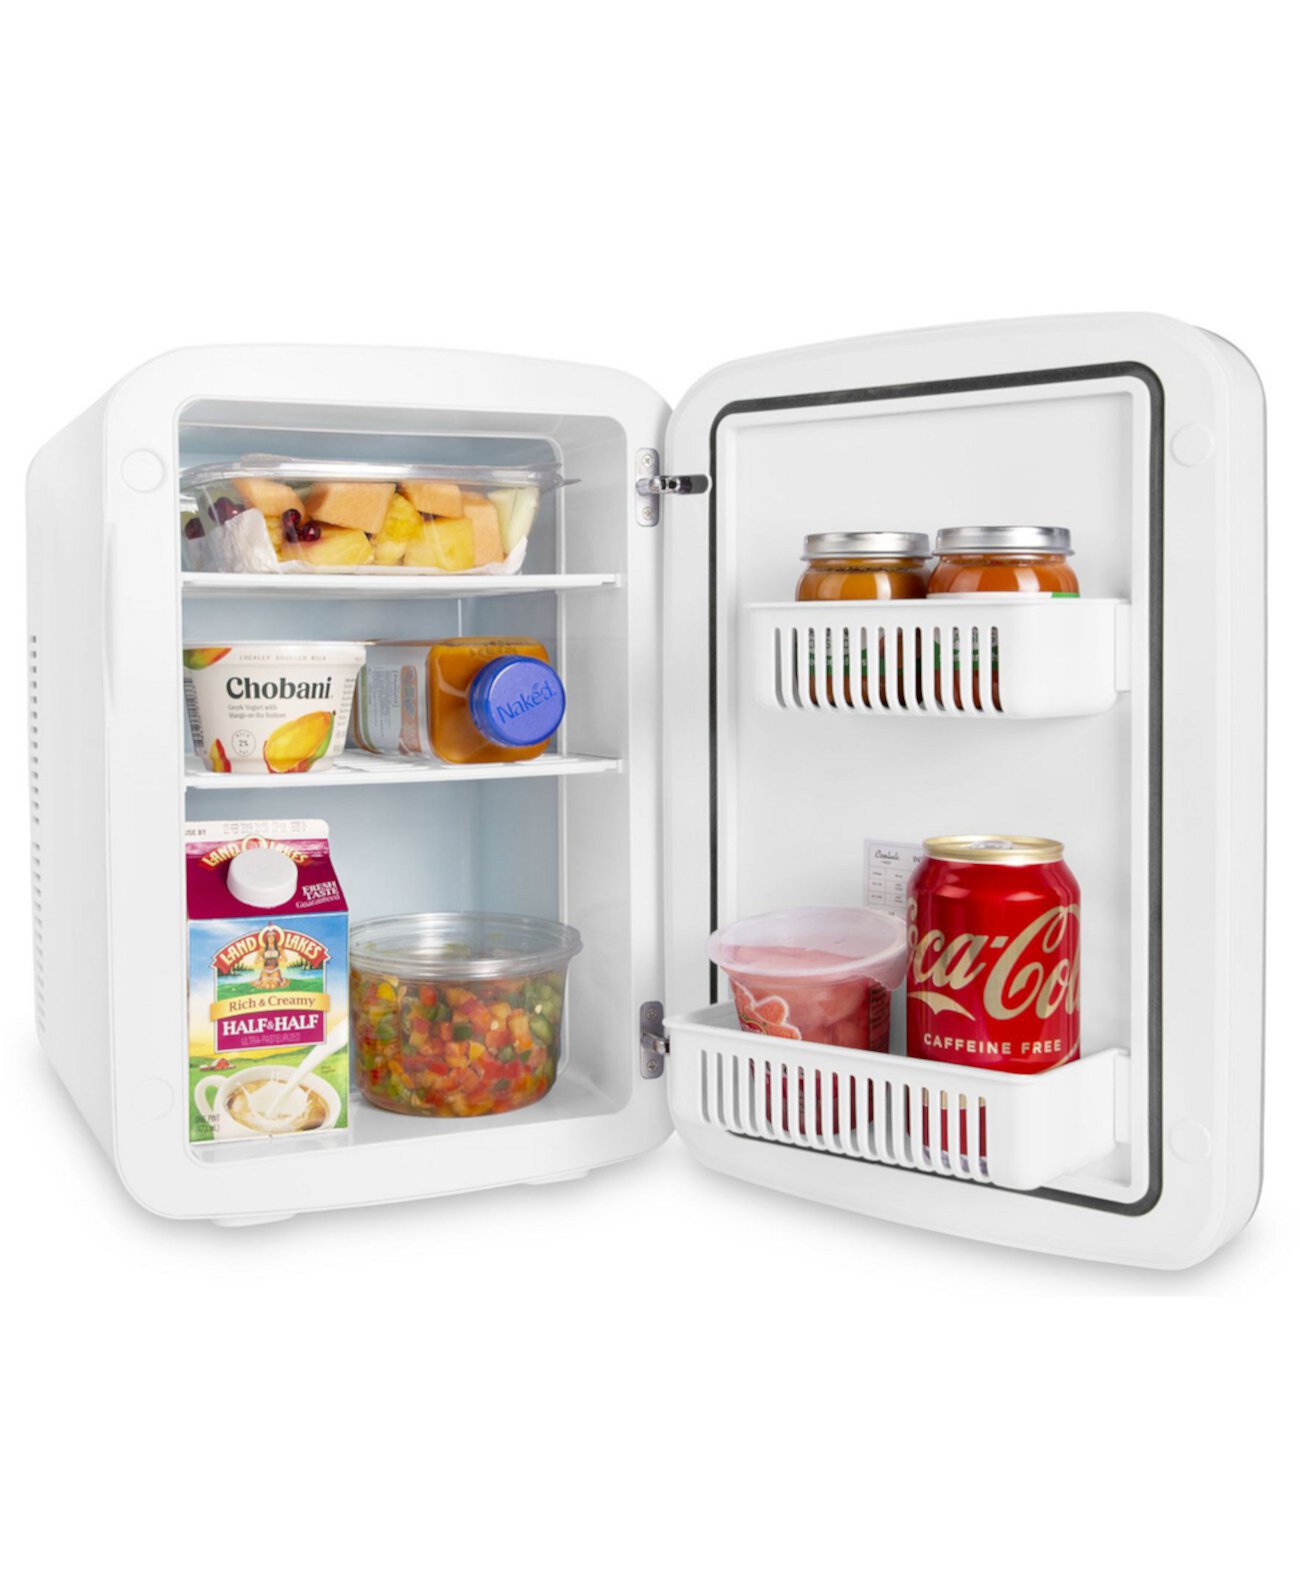 Компактный термоэлектрический охладитель и теплый мини-холодильник Infinity-15L Cooluli